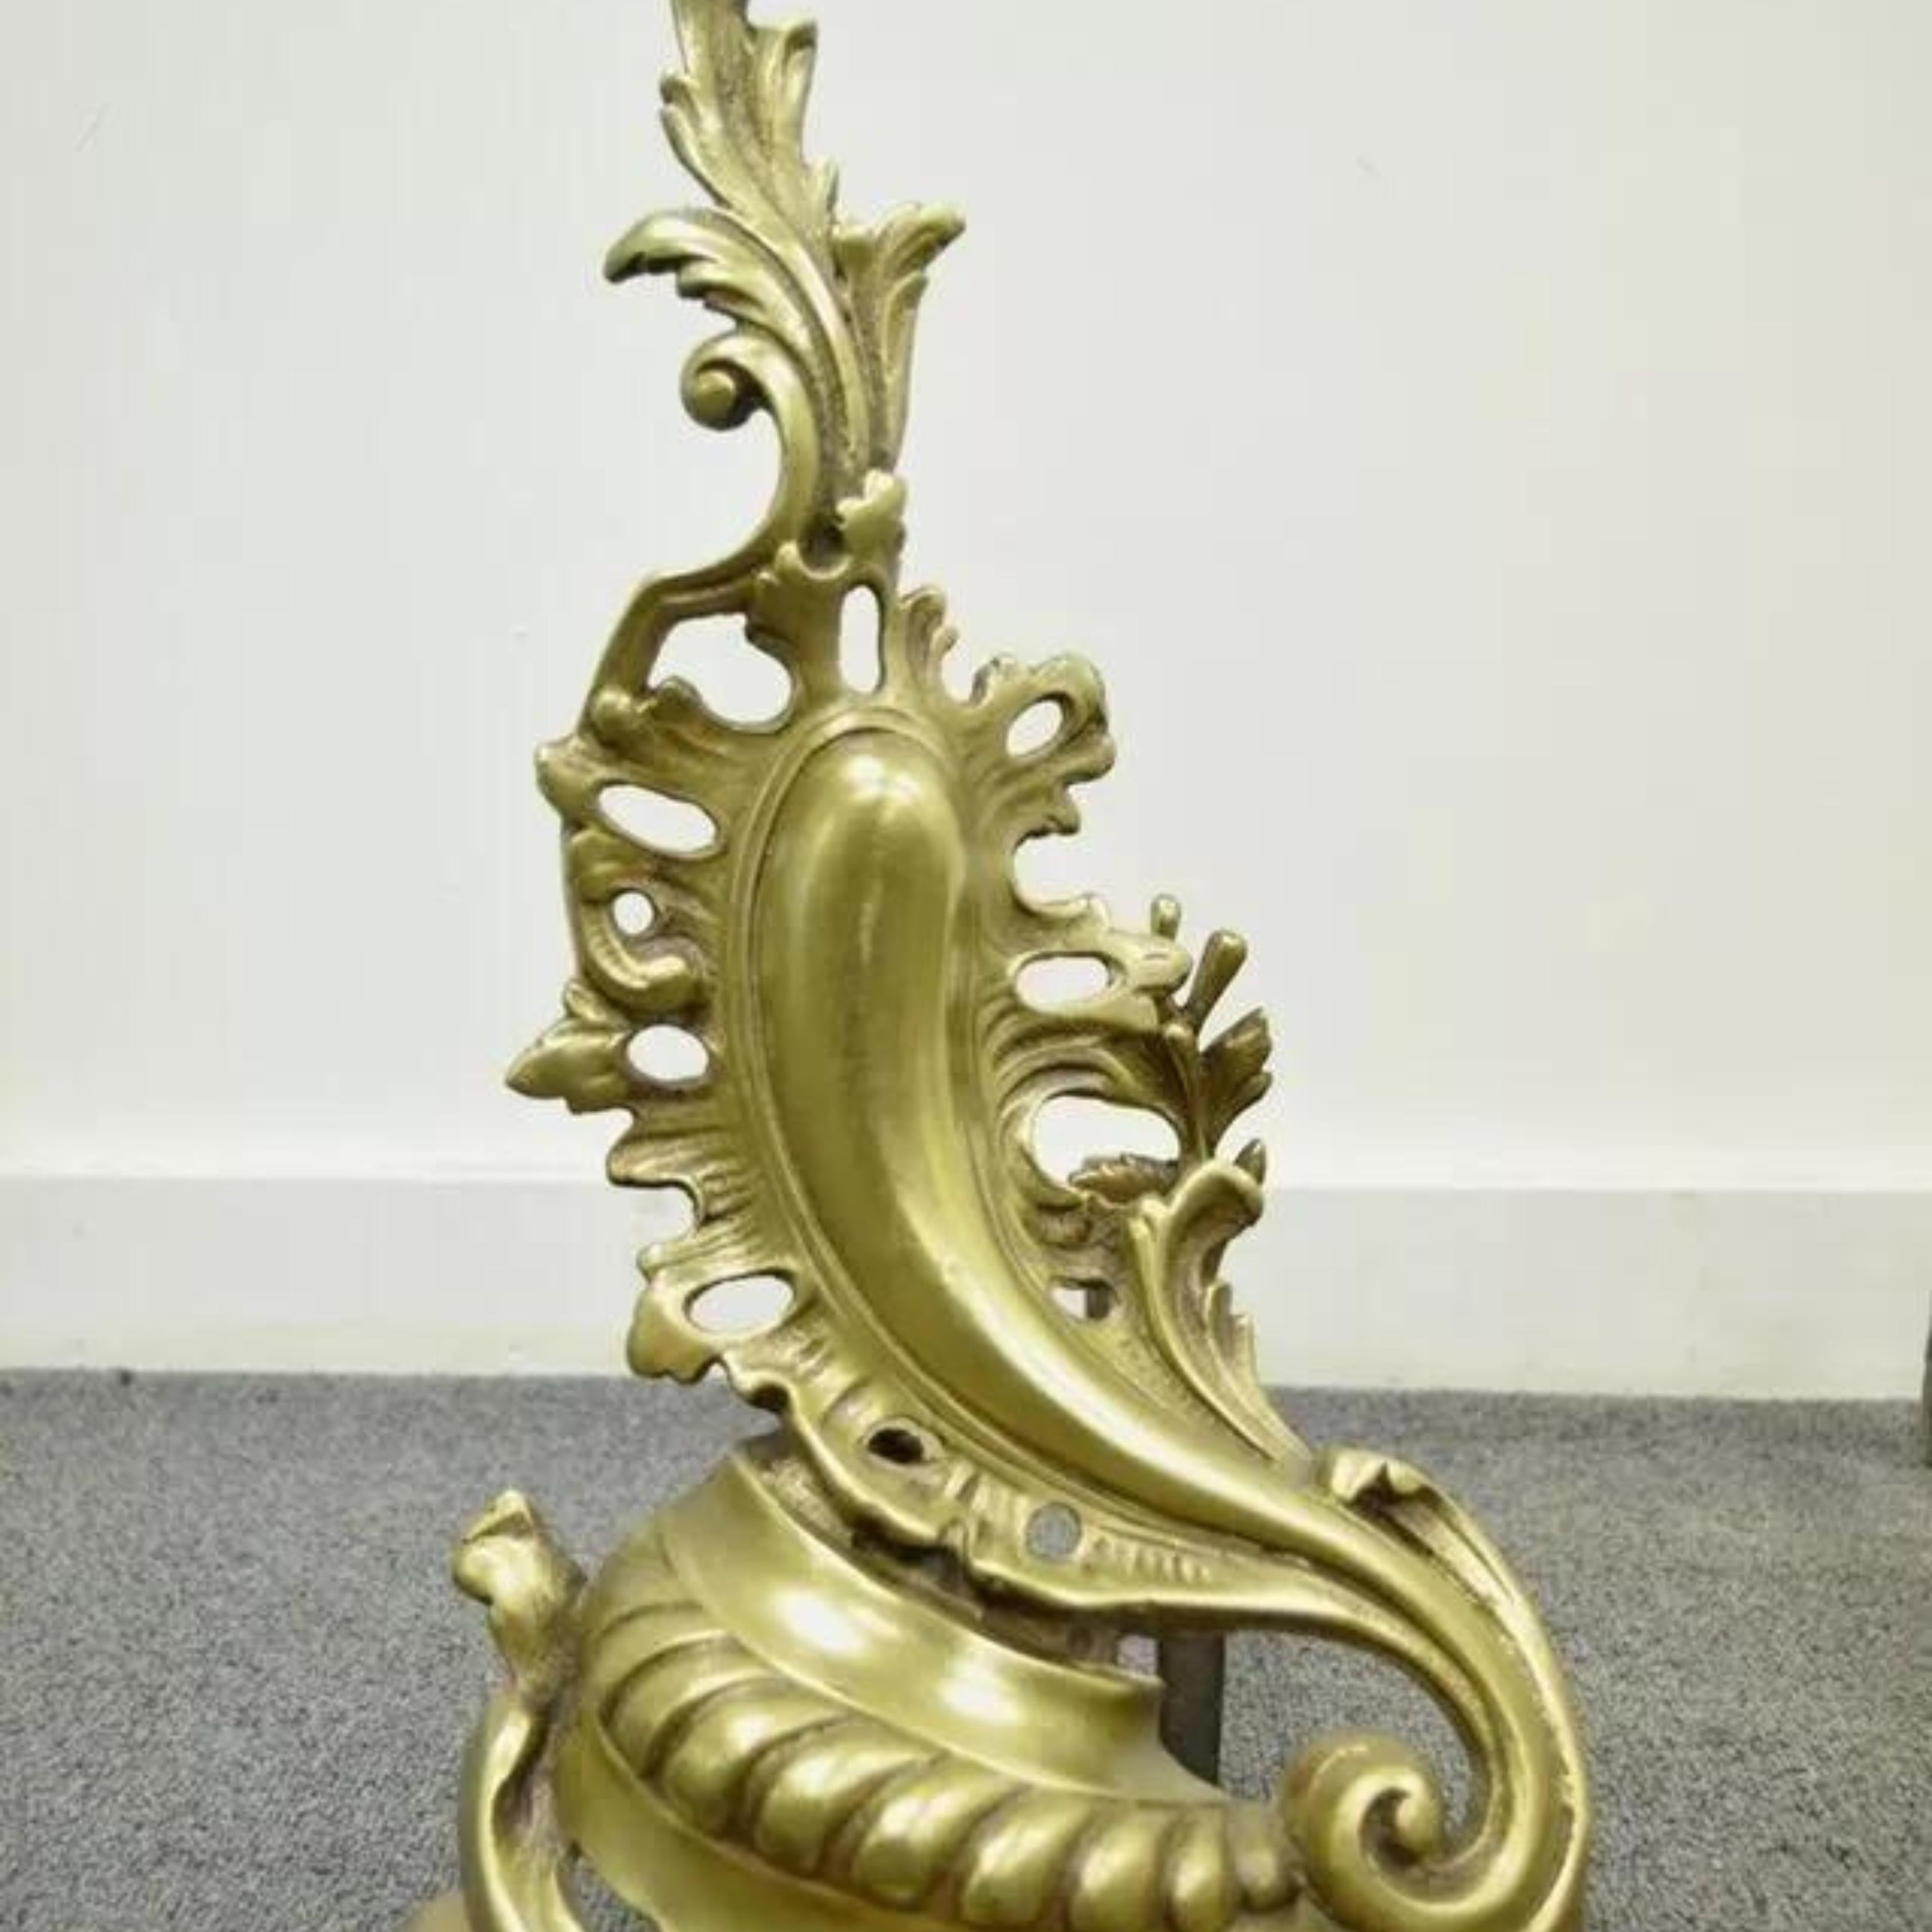 Ancienne paire de chenets à acanthe en bronze et laiton de style Louis XV Rococo. L'objet présente une belle forme sculpturale d'acanthe, des fleurons uniques en forme de feuilles, un très bel ensemble vintage. Vers le début ou le milieu des années